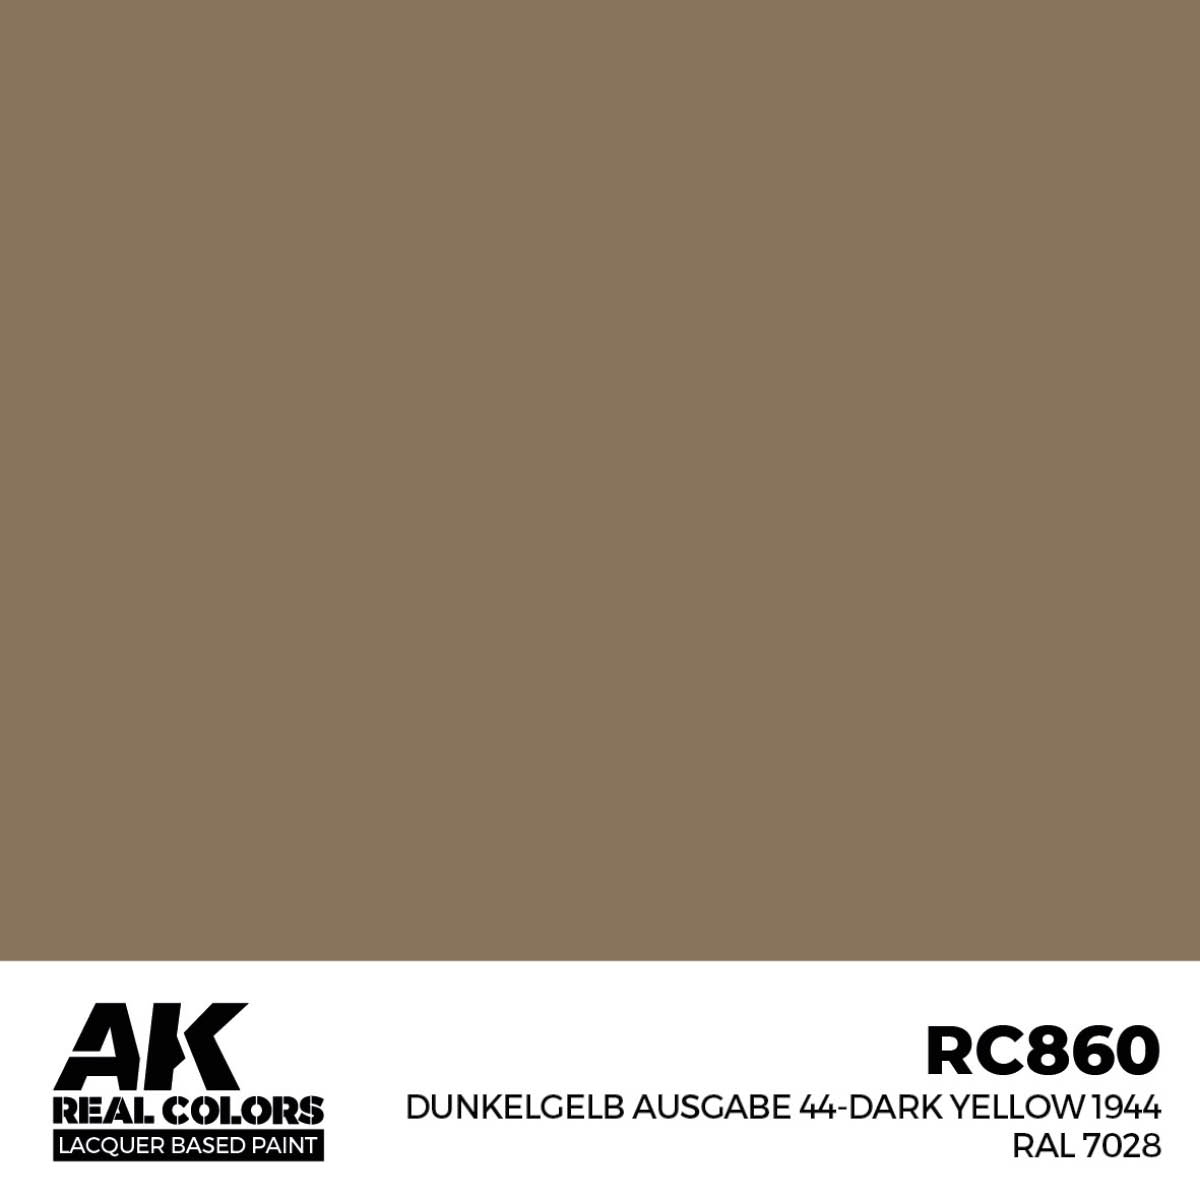 Compra Dunkelgelb Ausgabe 44-Dark Yellow 1944 RAL 7028 online por sólo 2,75€ | AK-Interactive